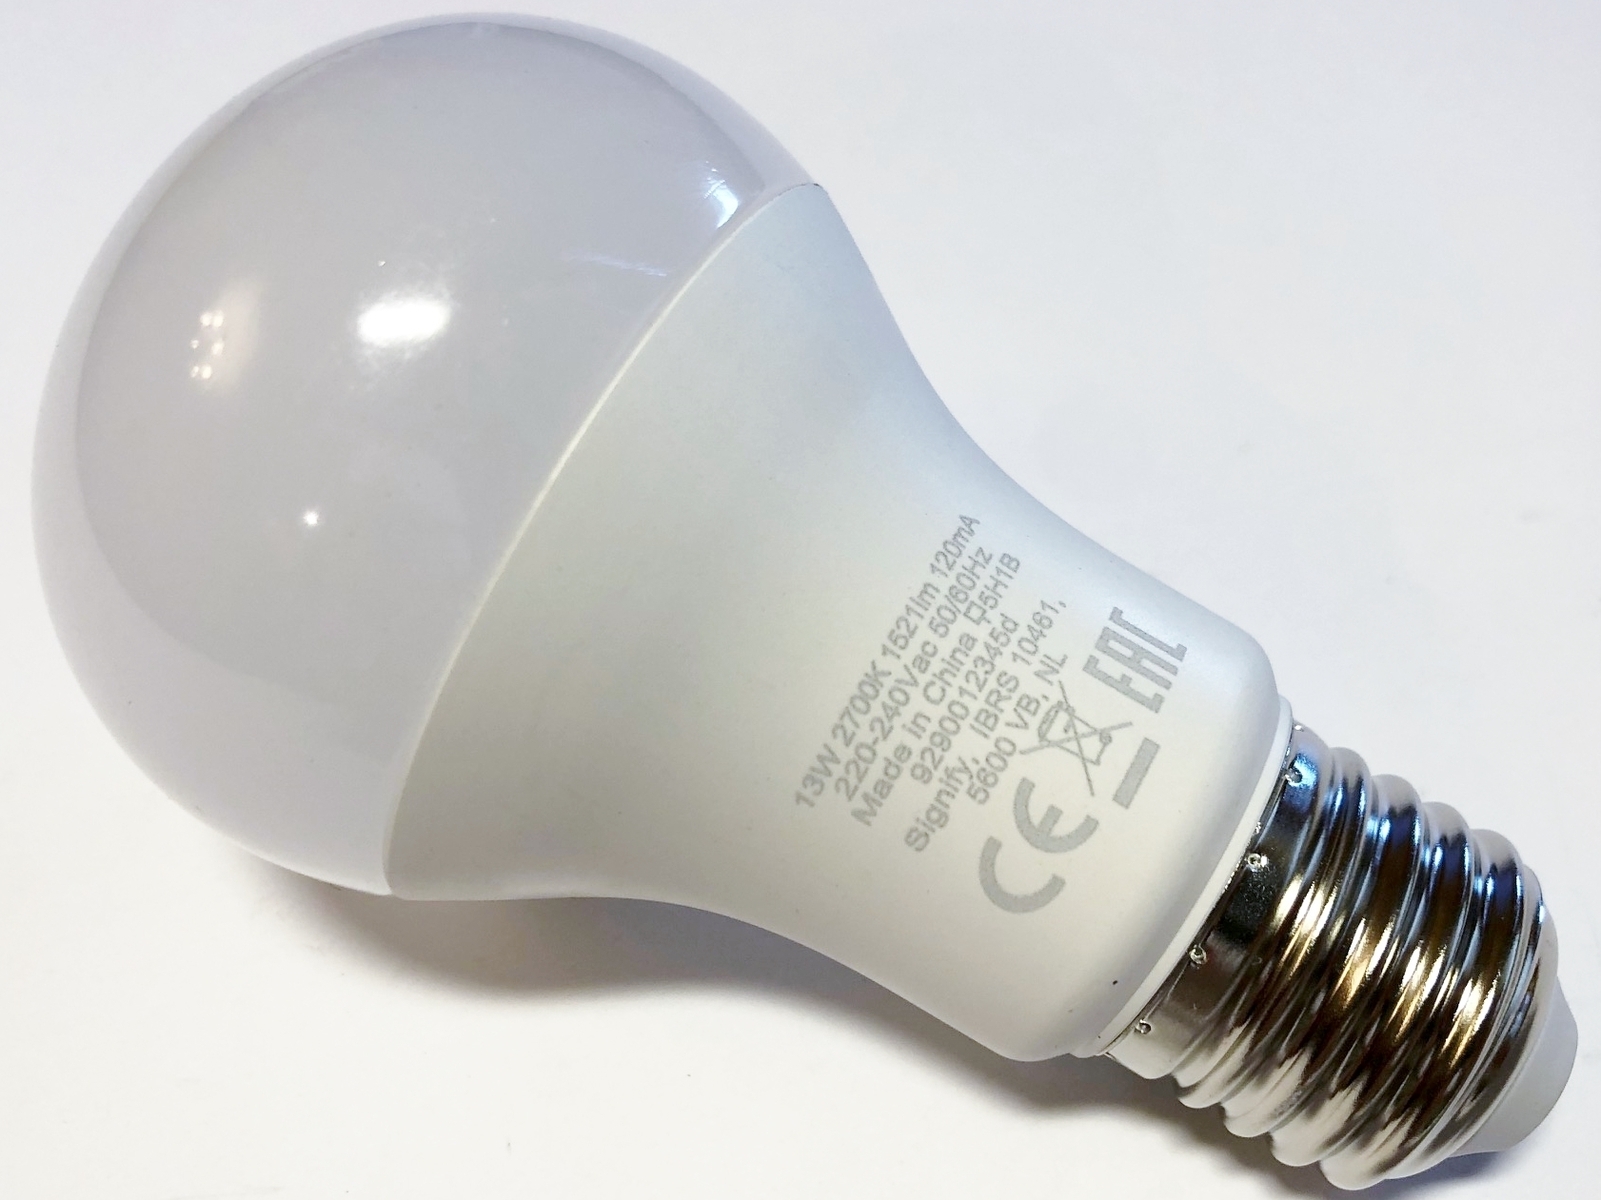 Ampoule éco-énergie 230V E27 13W - DISTRONIC SARL